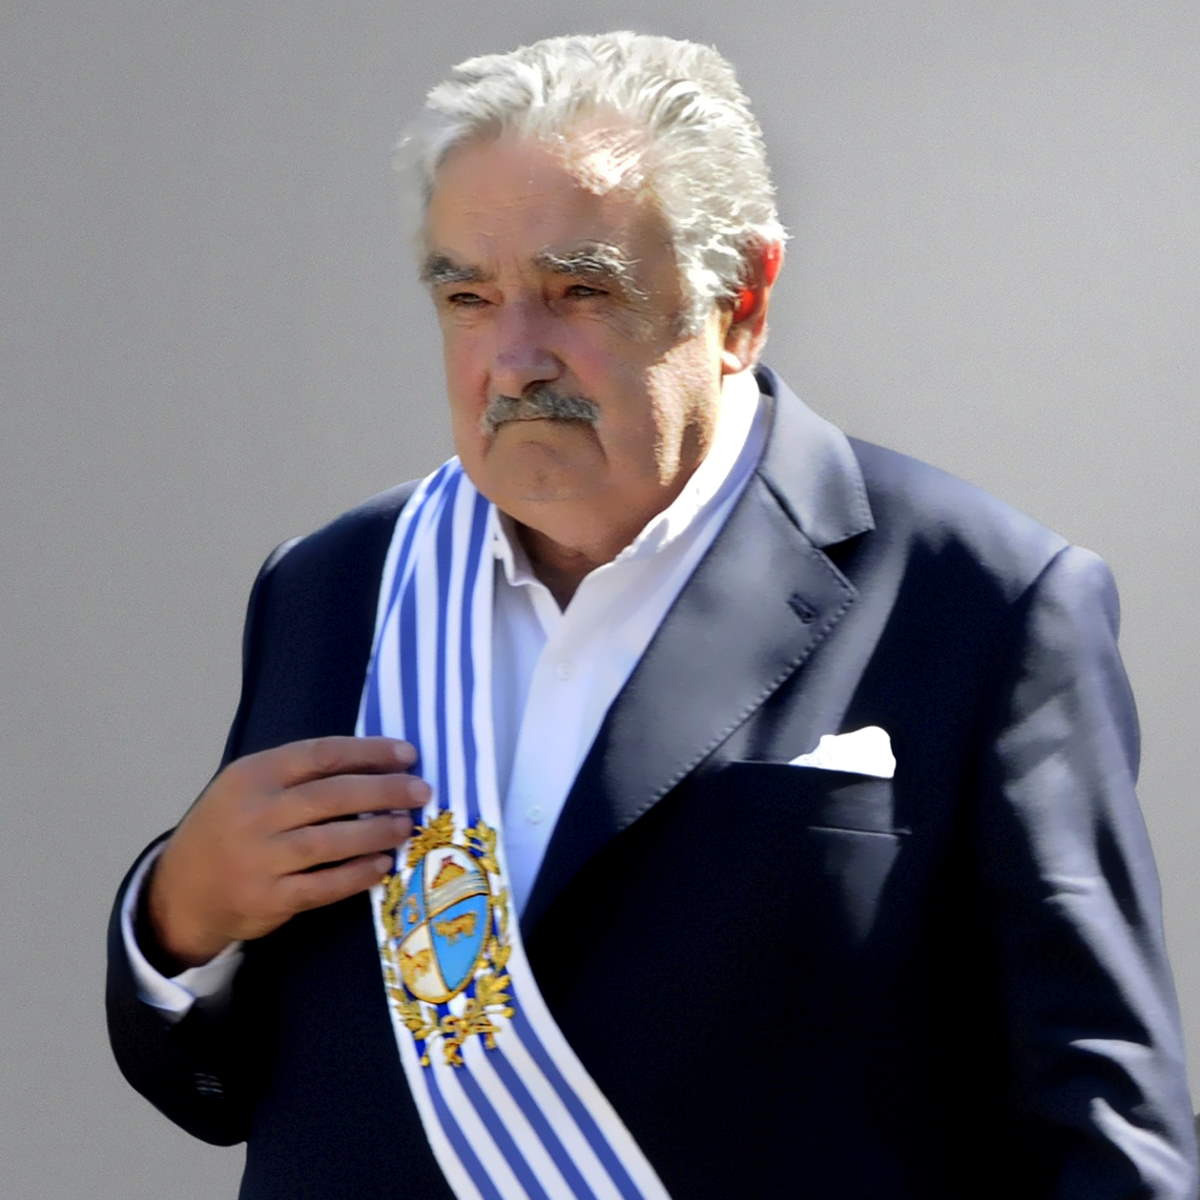 Le parole dell’ex presidente uruguaiano Pepe Mujica sulle misure anti-inflazione